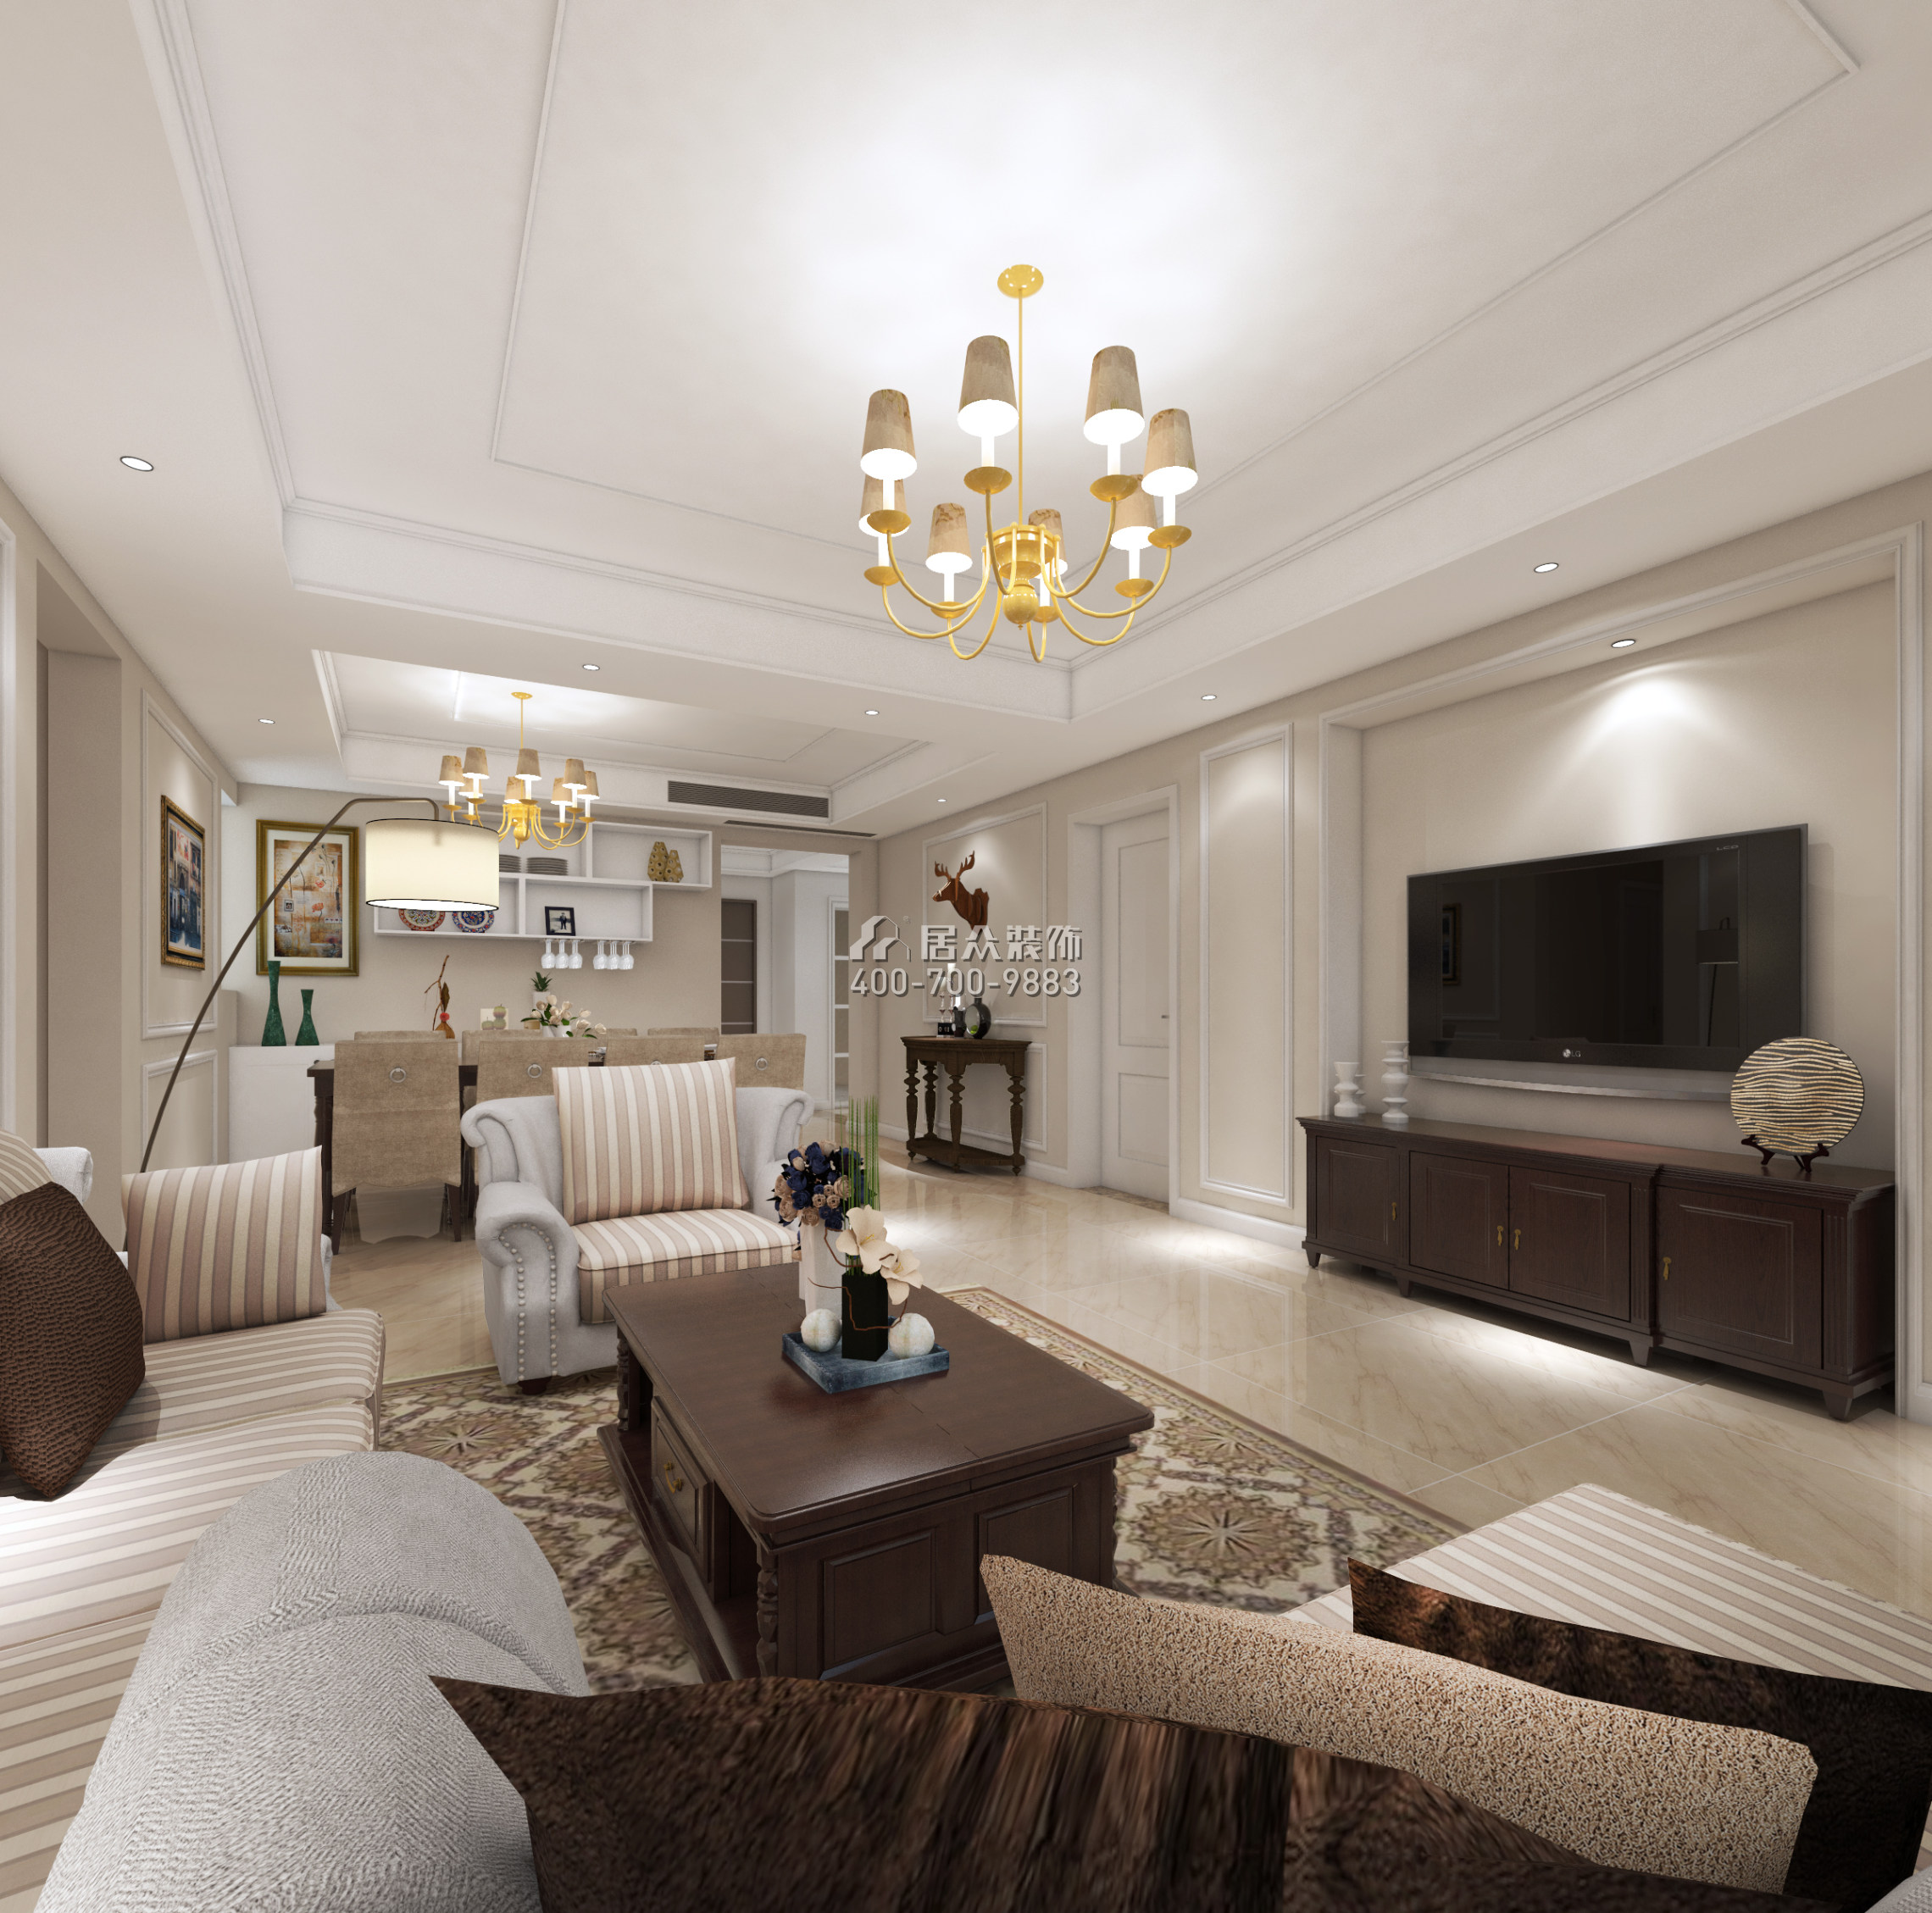 黄埔雅苑一期143平方米美式风格平层户型客厅装修效果图